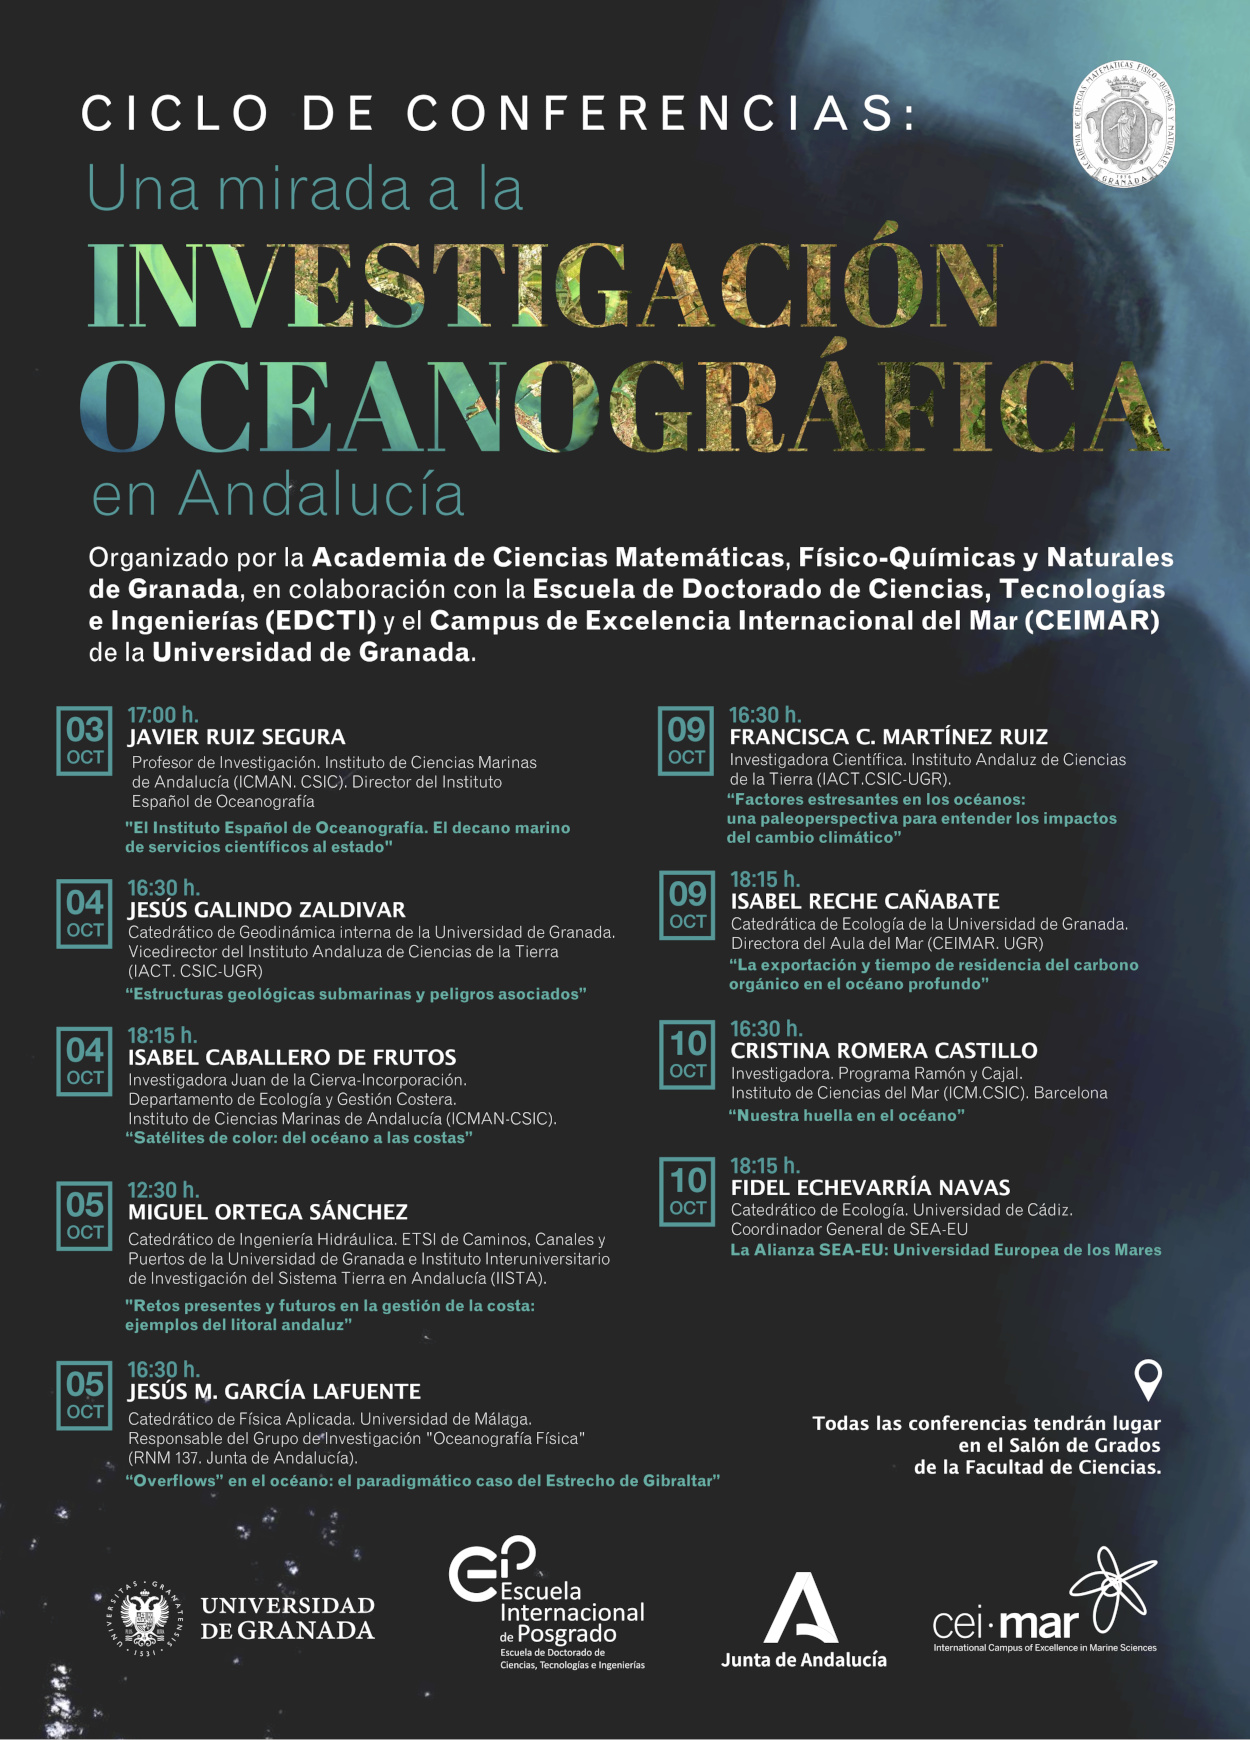 Ciclo de Conferencias: Una mirada a la Investigación Oceanográfica en Andalucía